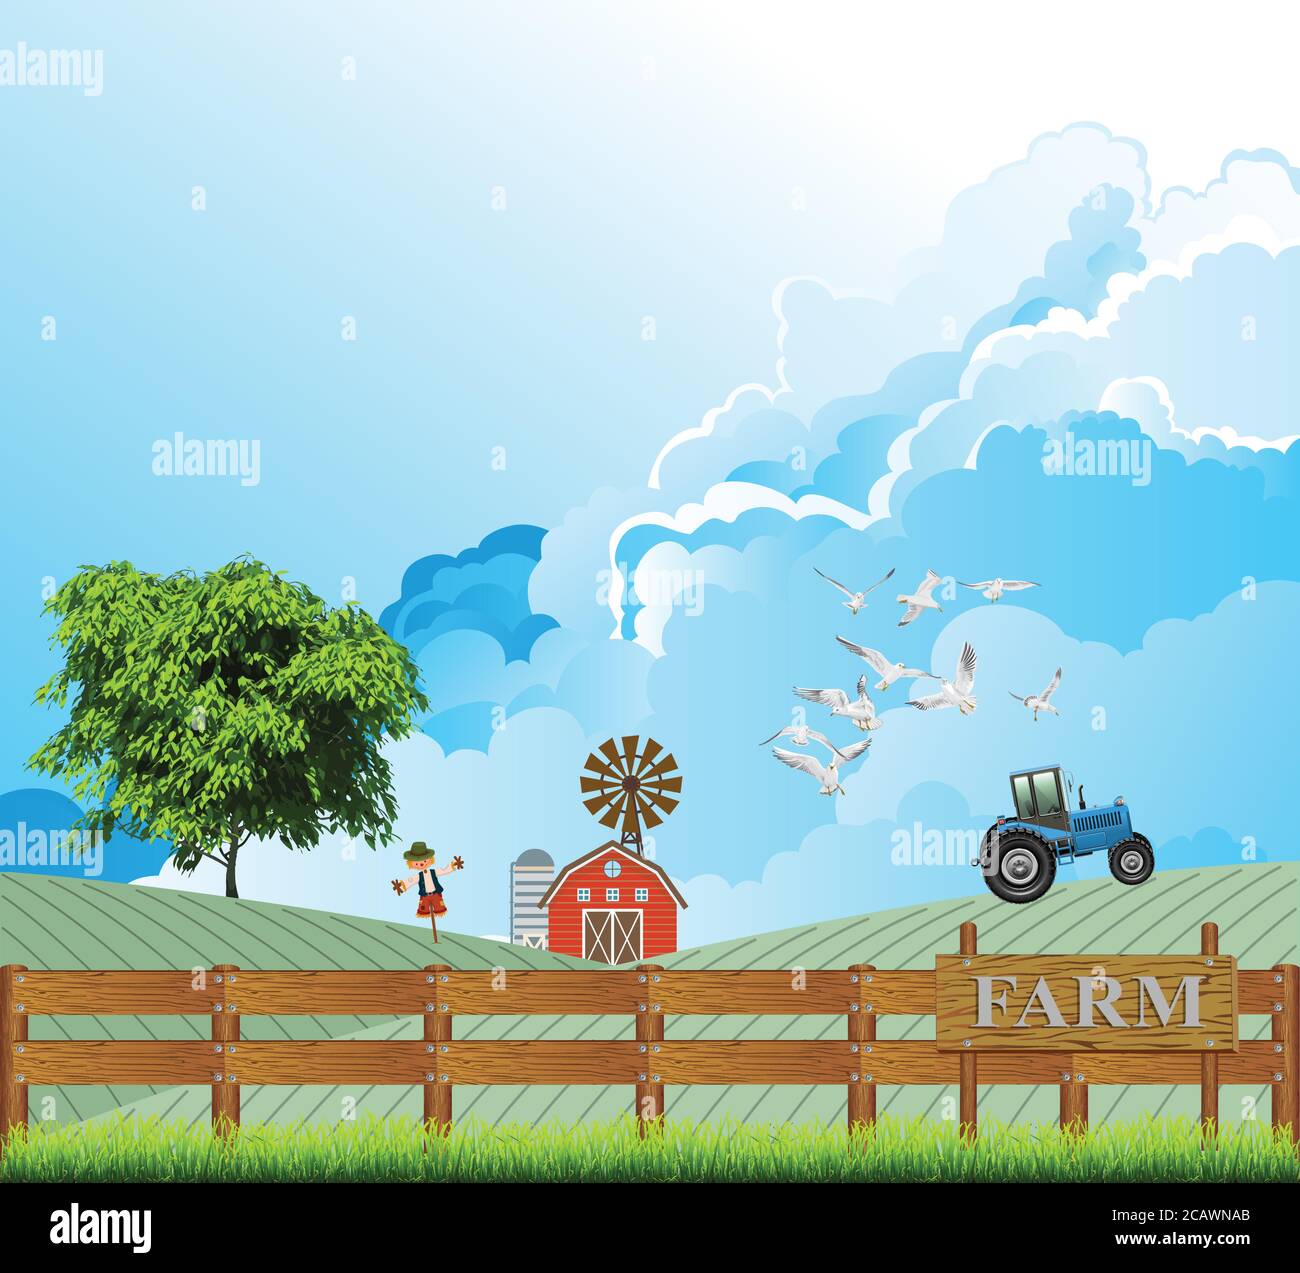 Pintoresca escena rural con tractor trabajando en una granja con gaviotas volando cerca del vehículo contra un cielo azul nublado Ilustración del Vector